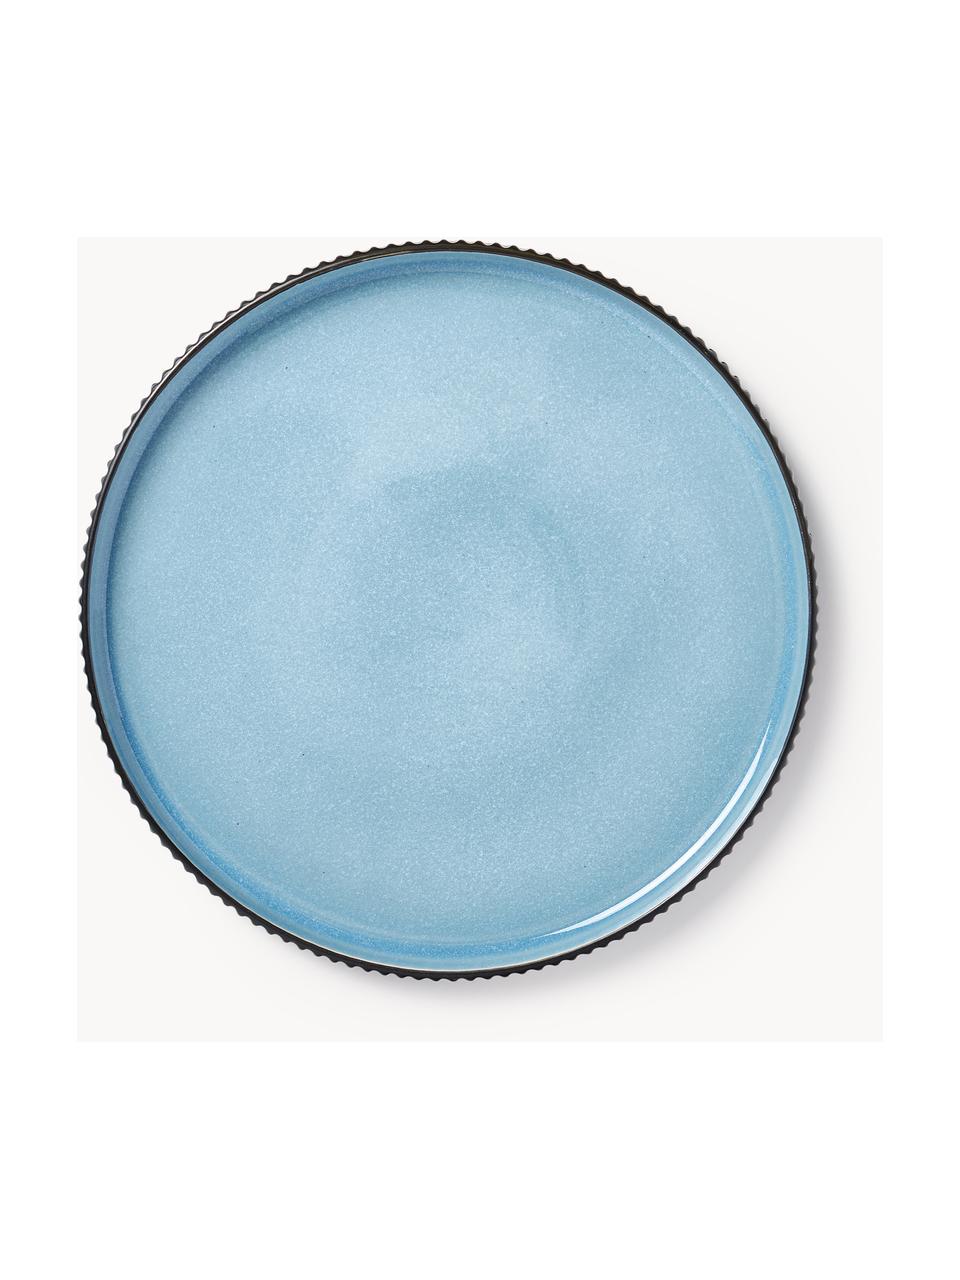 Platos llanos con relieve Bora, 4 uds., Cerámica esmaltada, Azul claro brillante, negro mate, Ø 27 cm